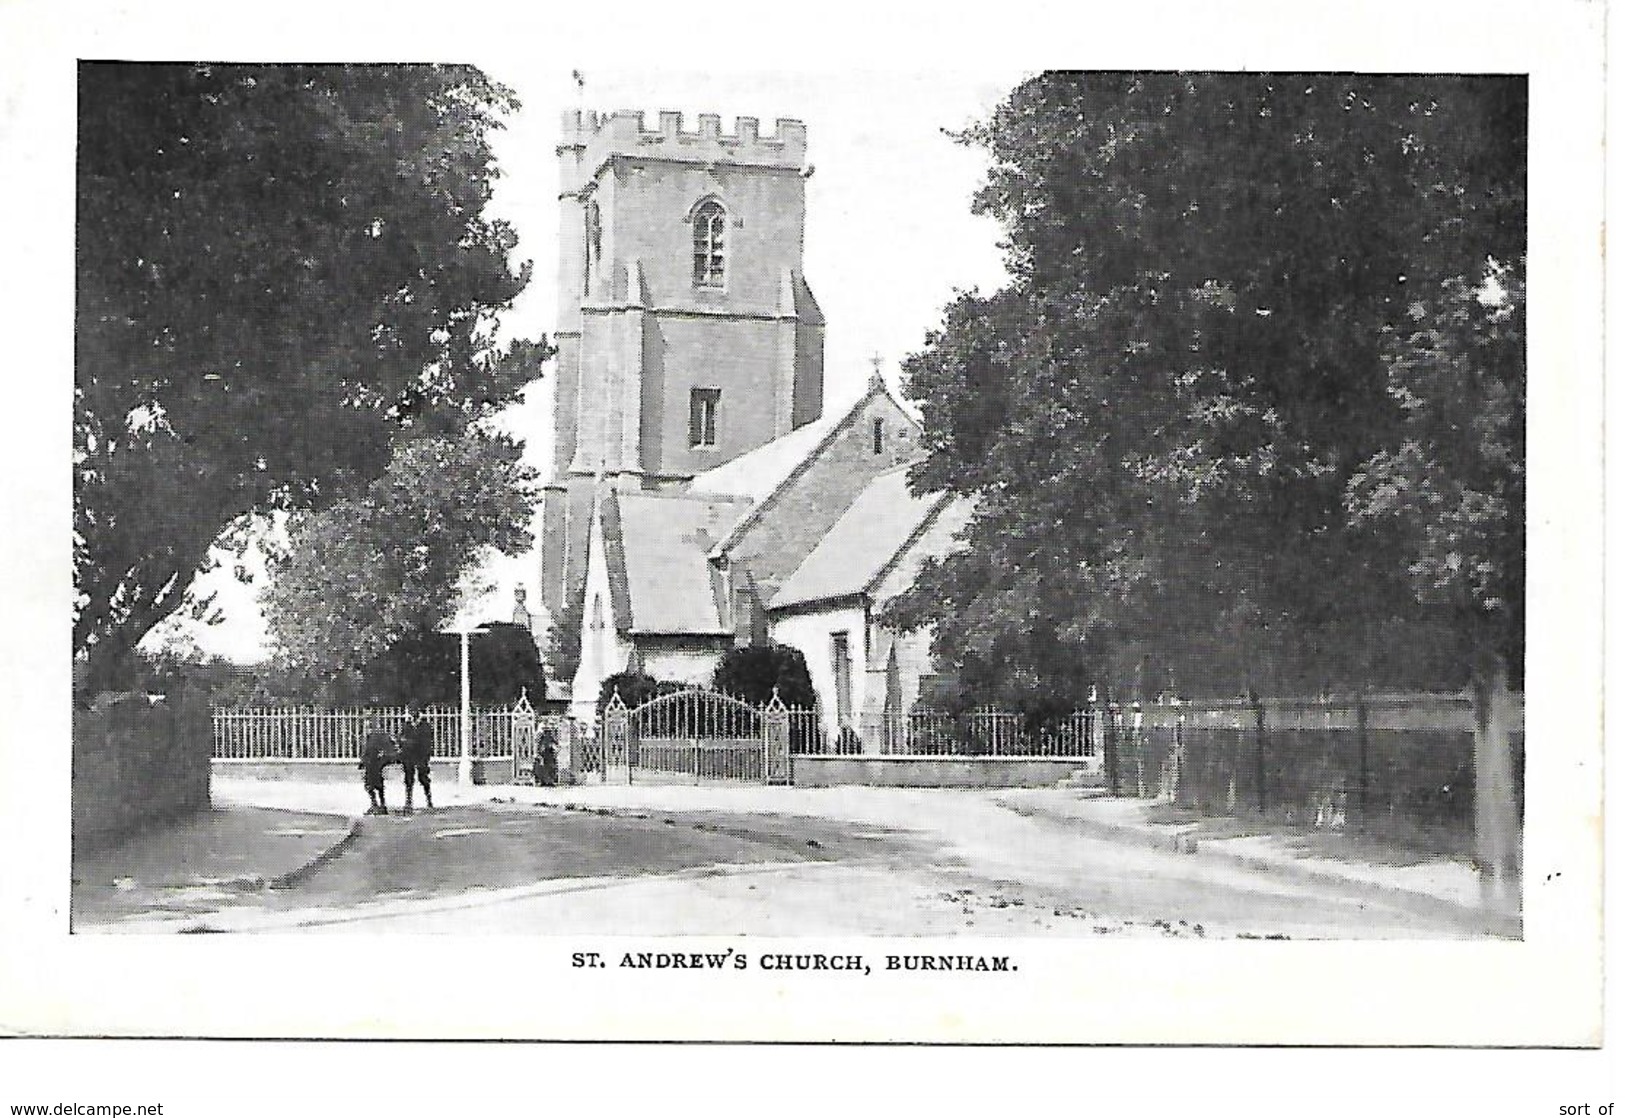 BURNHAM - ST ANDREW'S CHURCH - (STREET SCENE) - B5 - Buckinghamshire